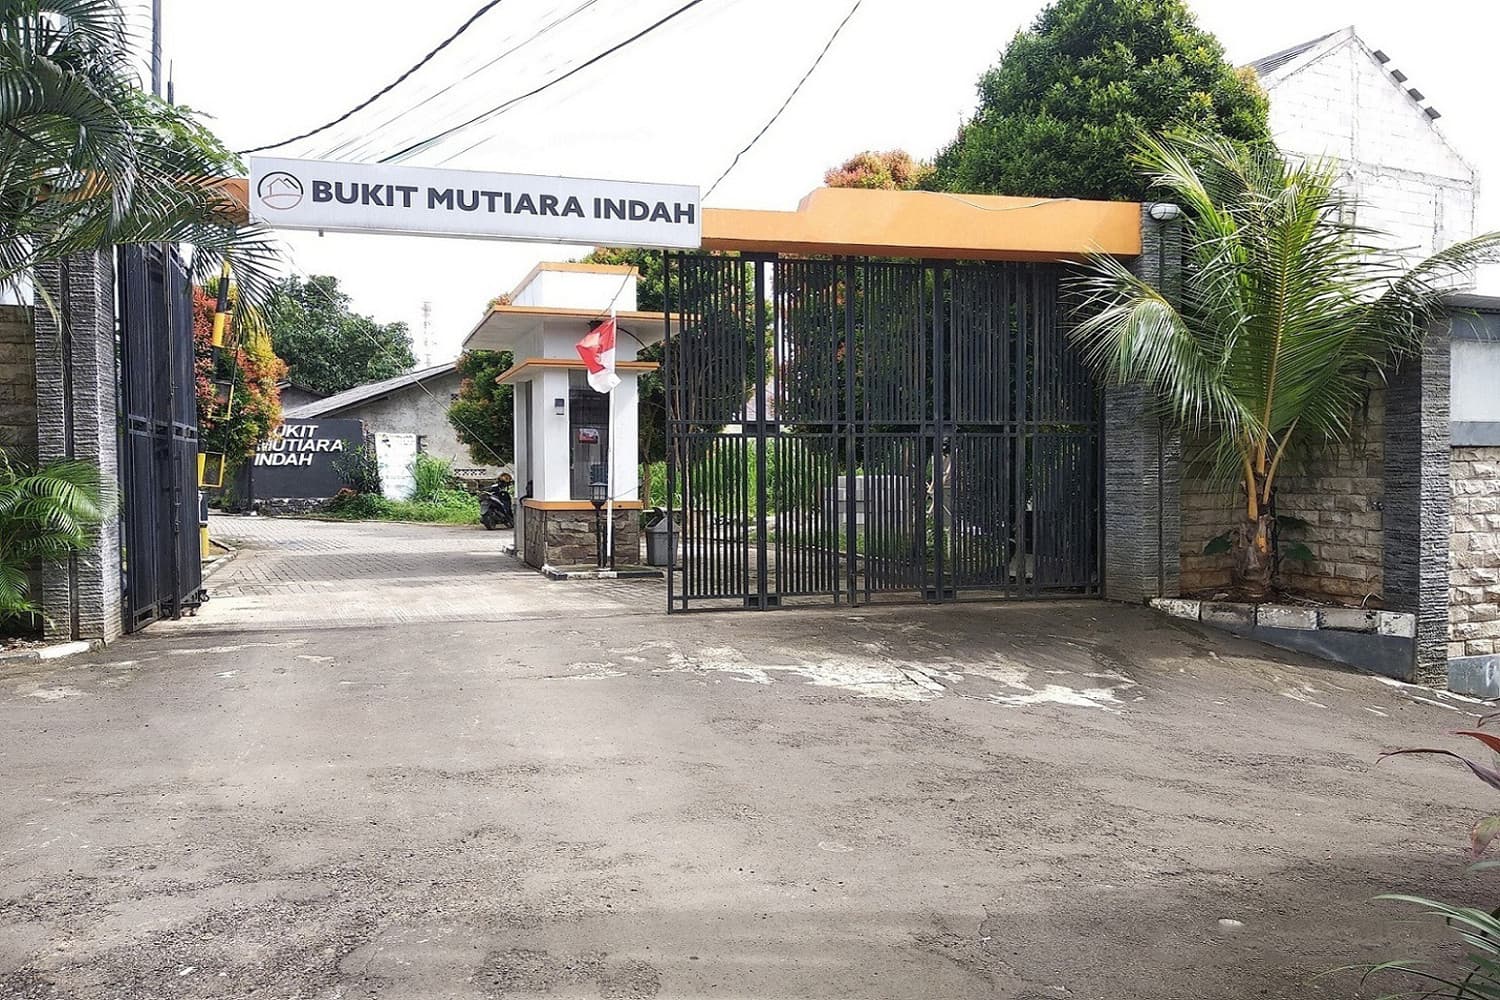 Main Gate Bukit Mutiara Indah